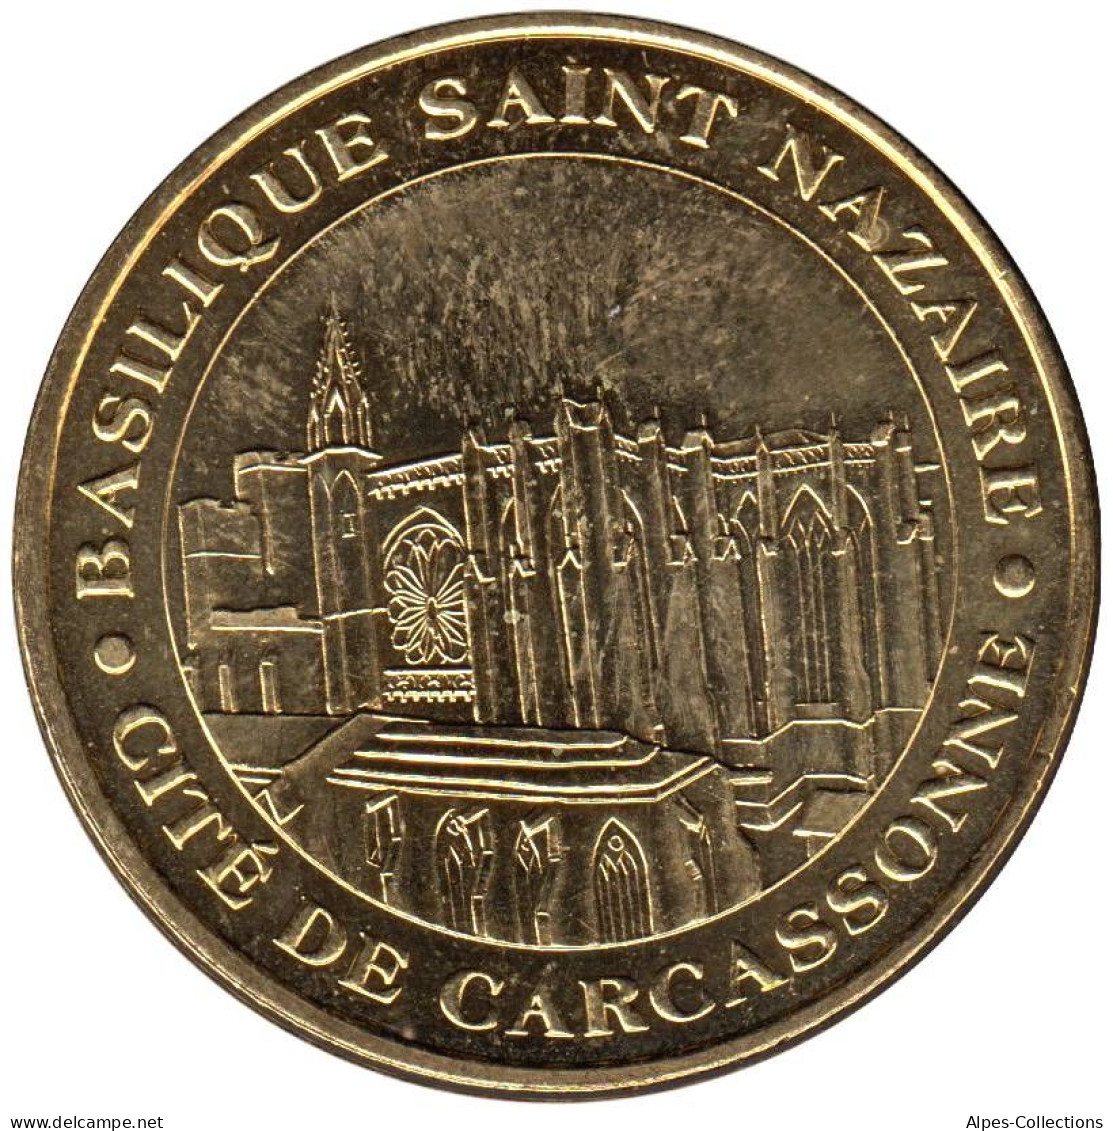 11-0016 - JETON TOURISTIQUE MDP - Basilique Saint-Nazaire - Carcassonne - 2009.1 - 2009